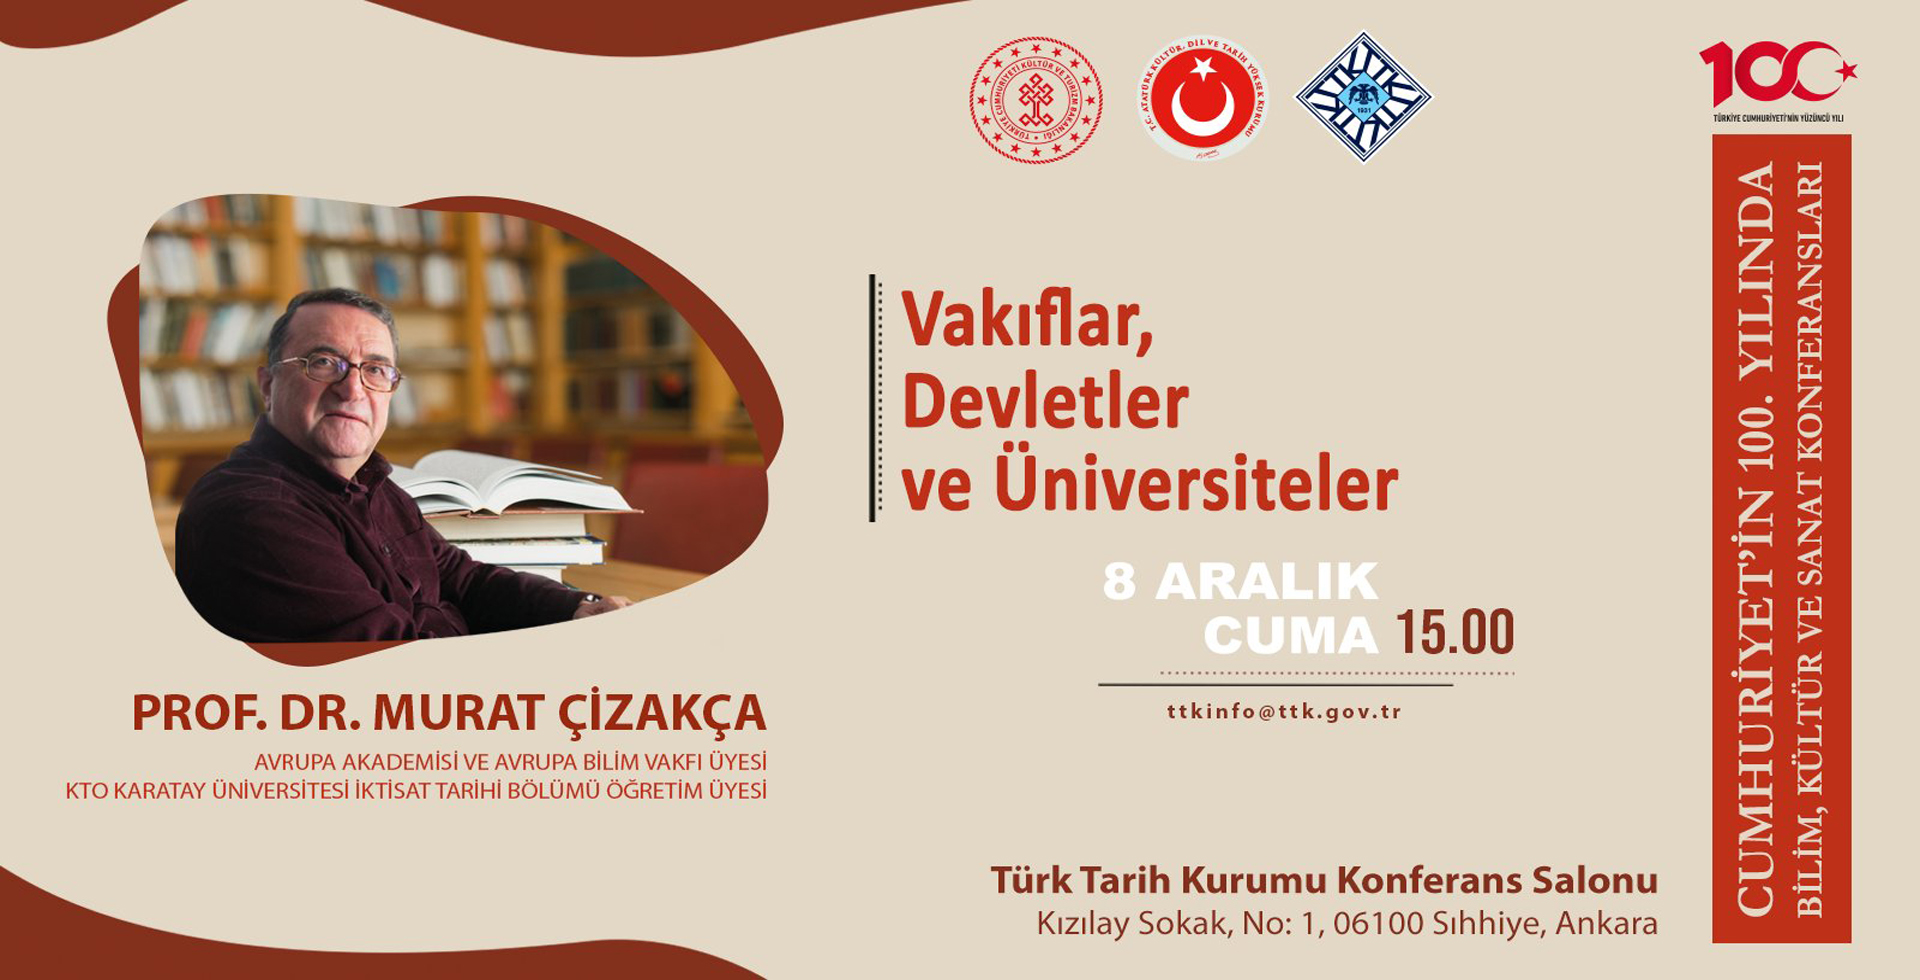  Konferans-Prof. Dr. Murat ÇİZAKÇA, Vakıflar, Devletler ve Üniversiteler